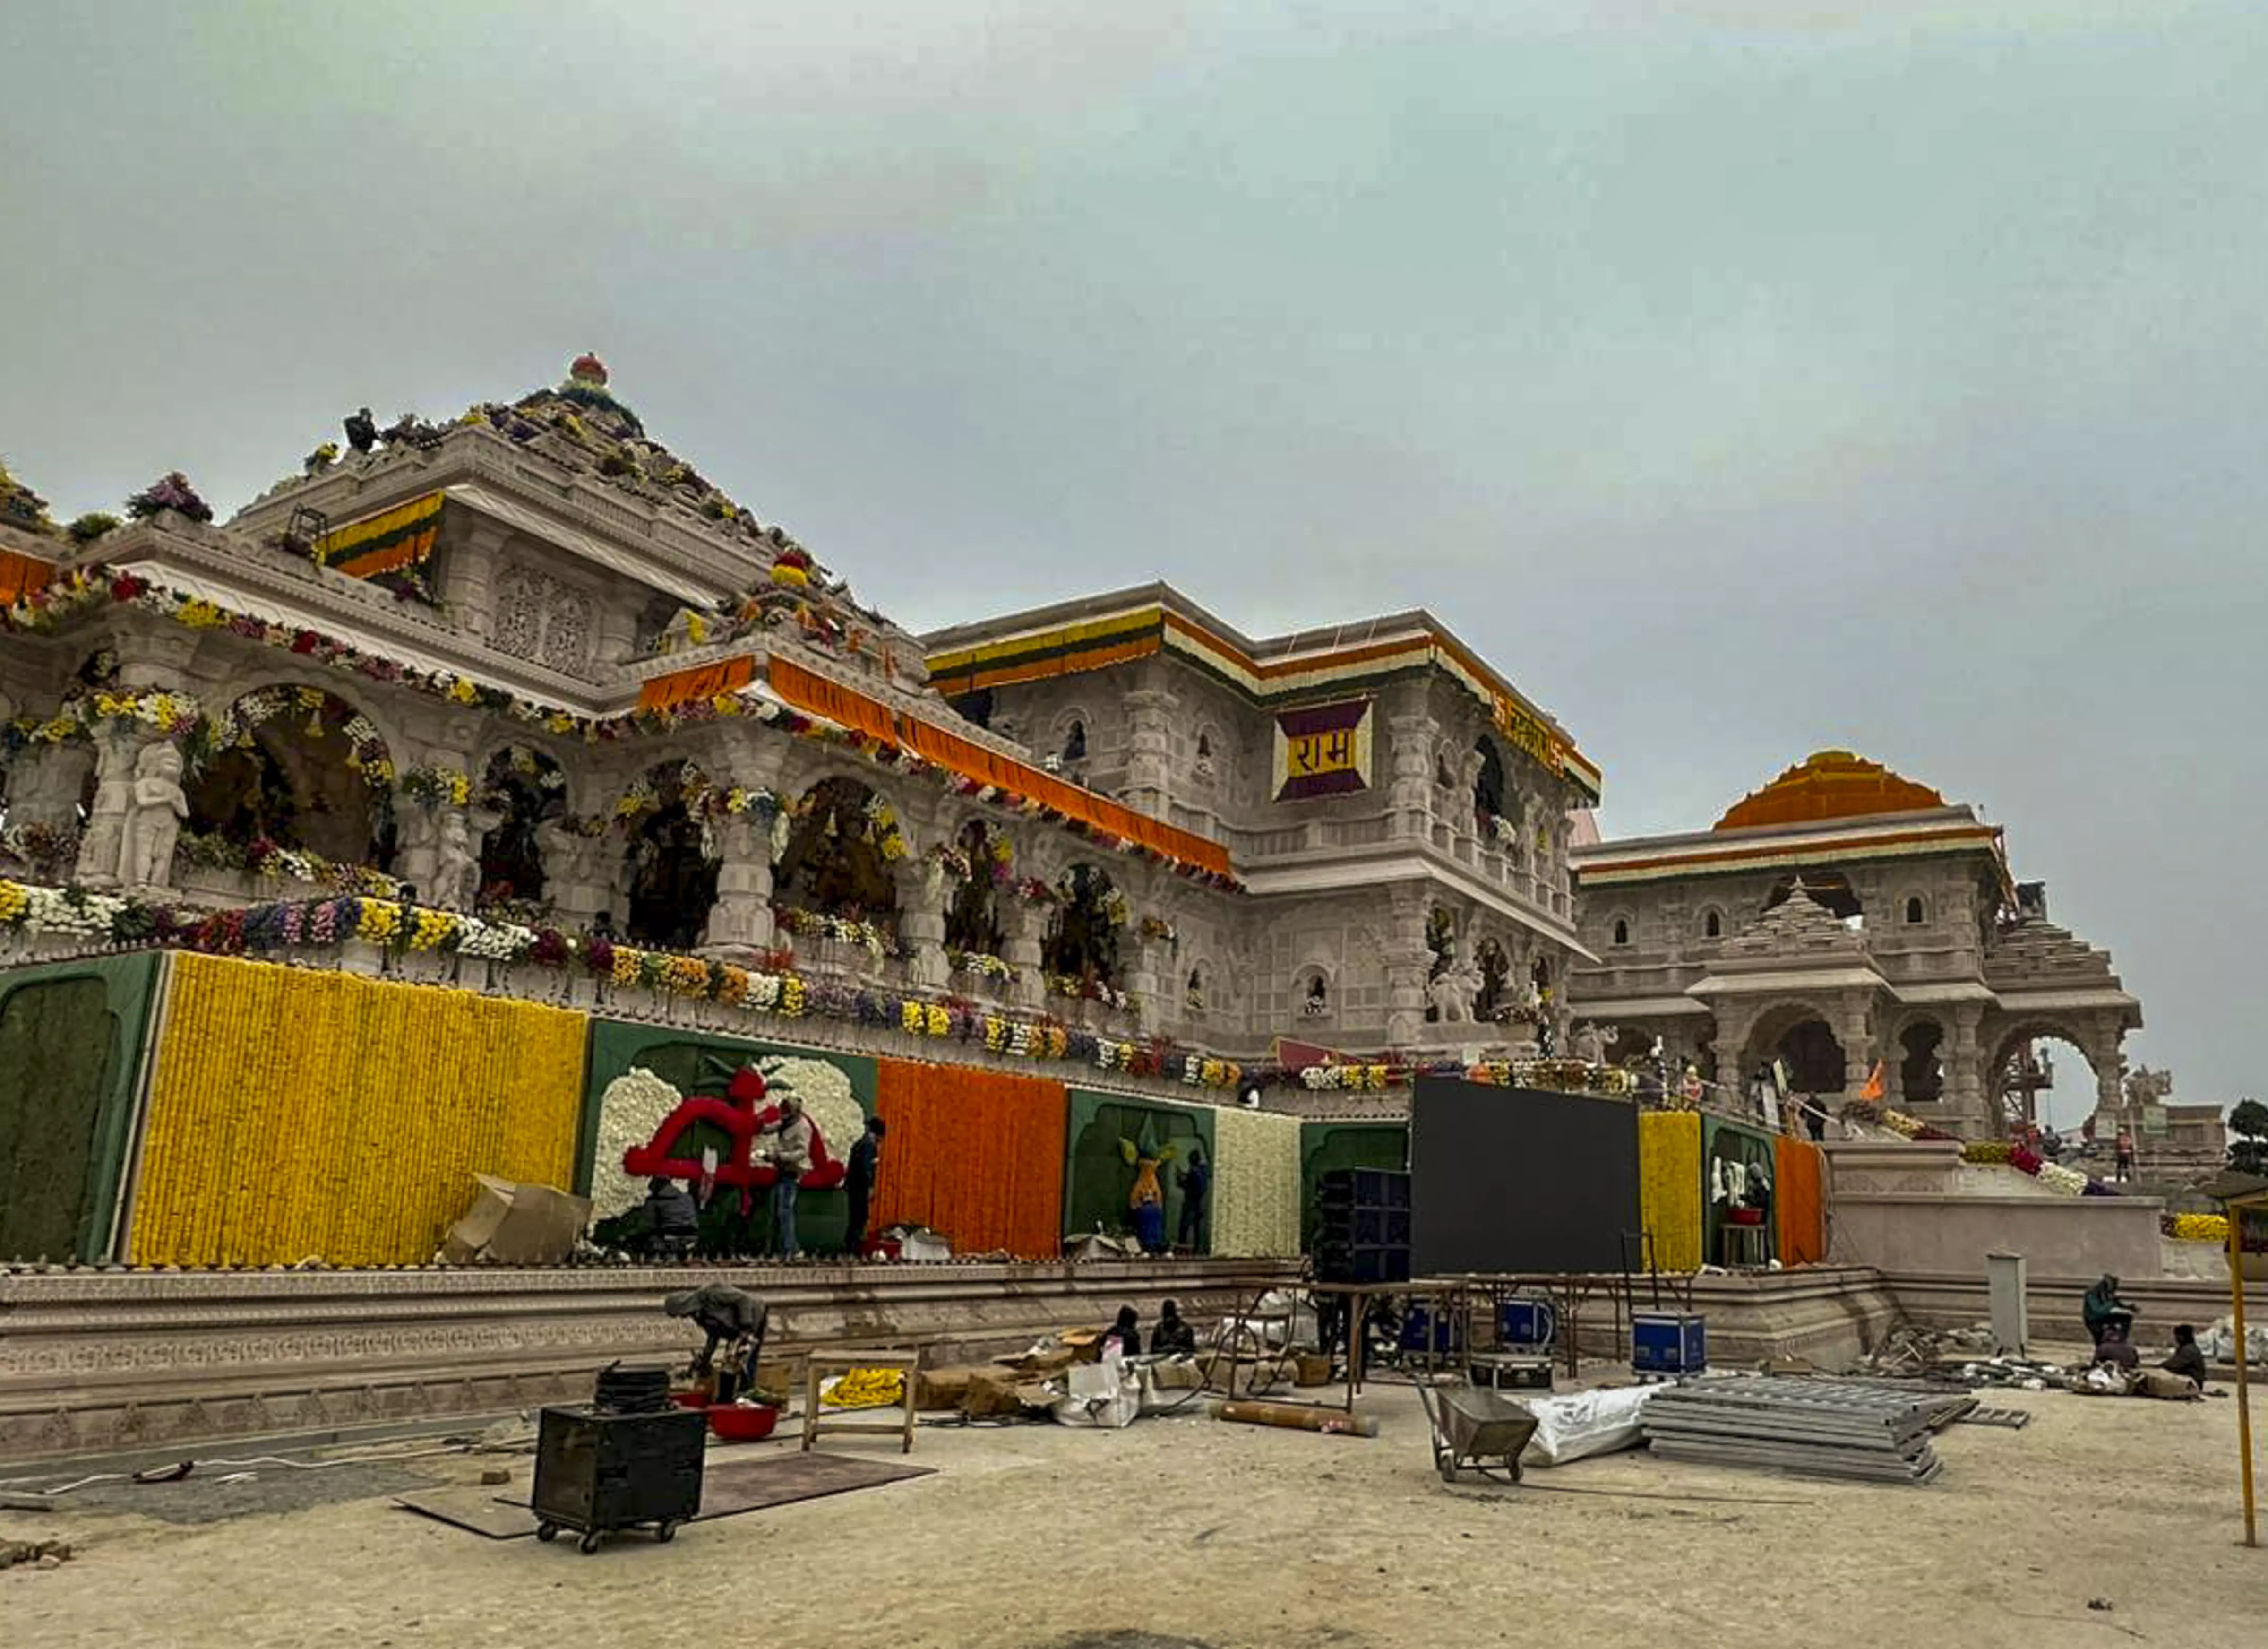 Ram Temple, Ayodhya